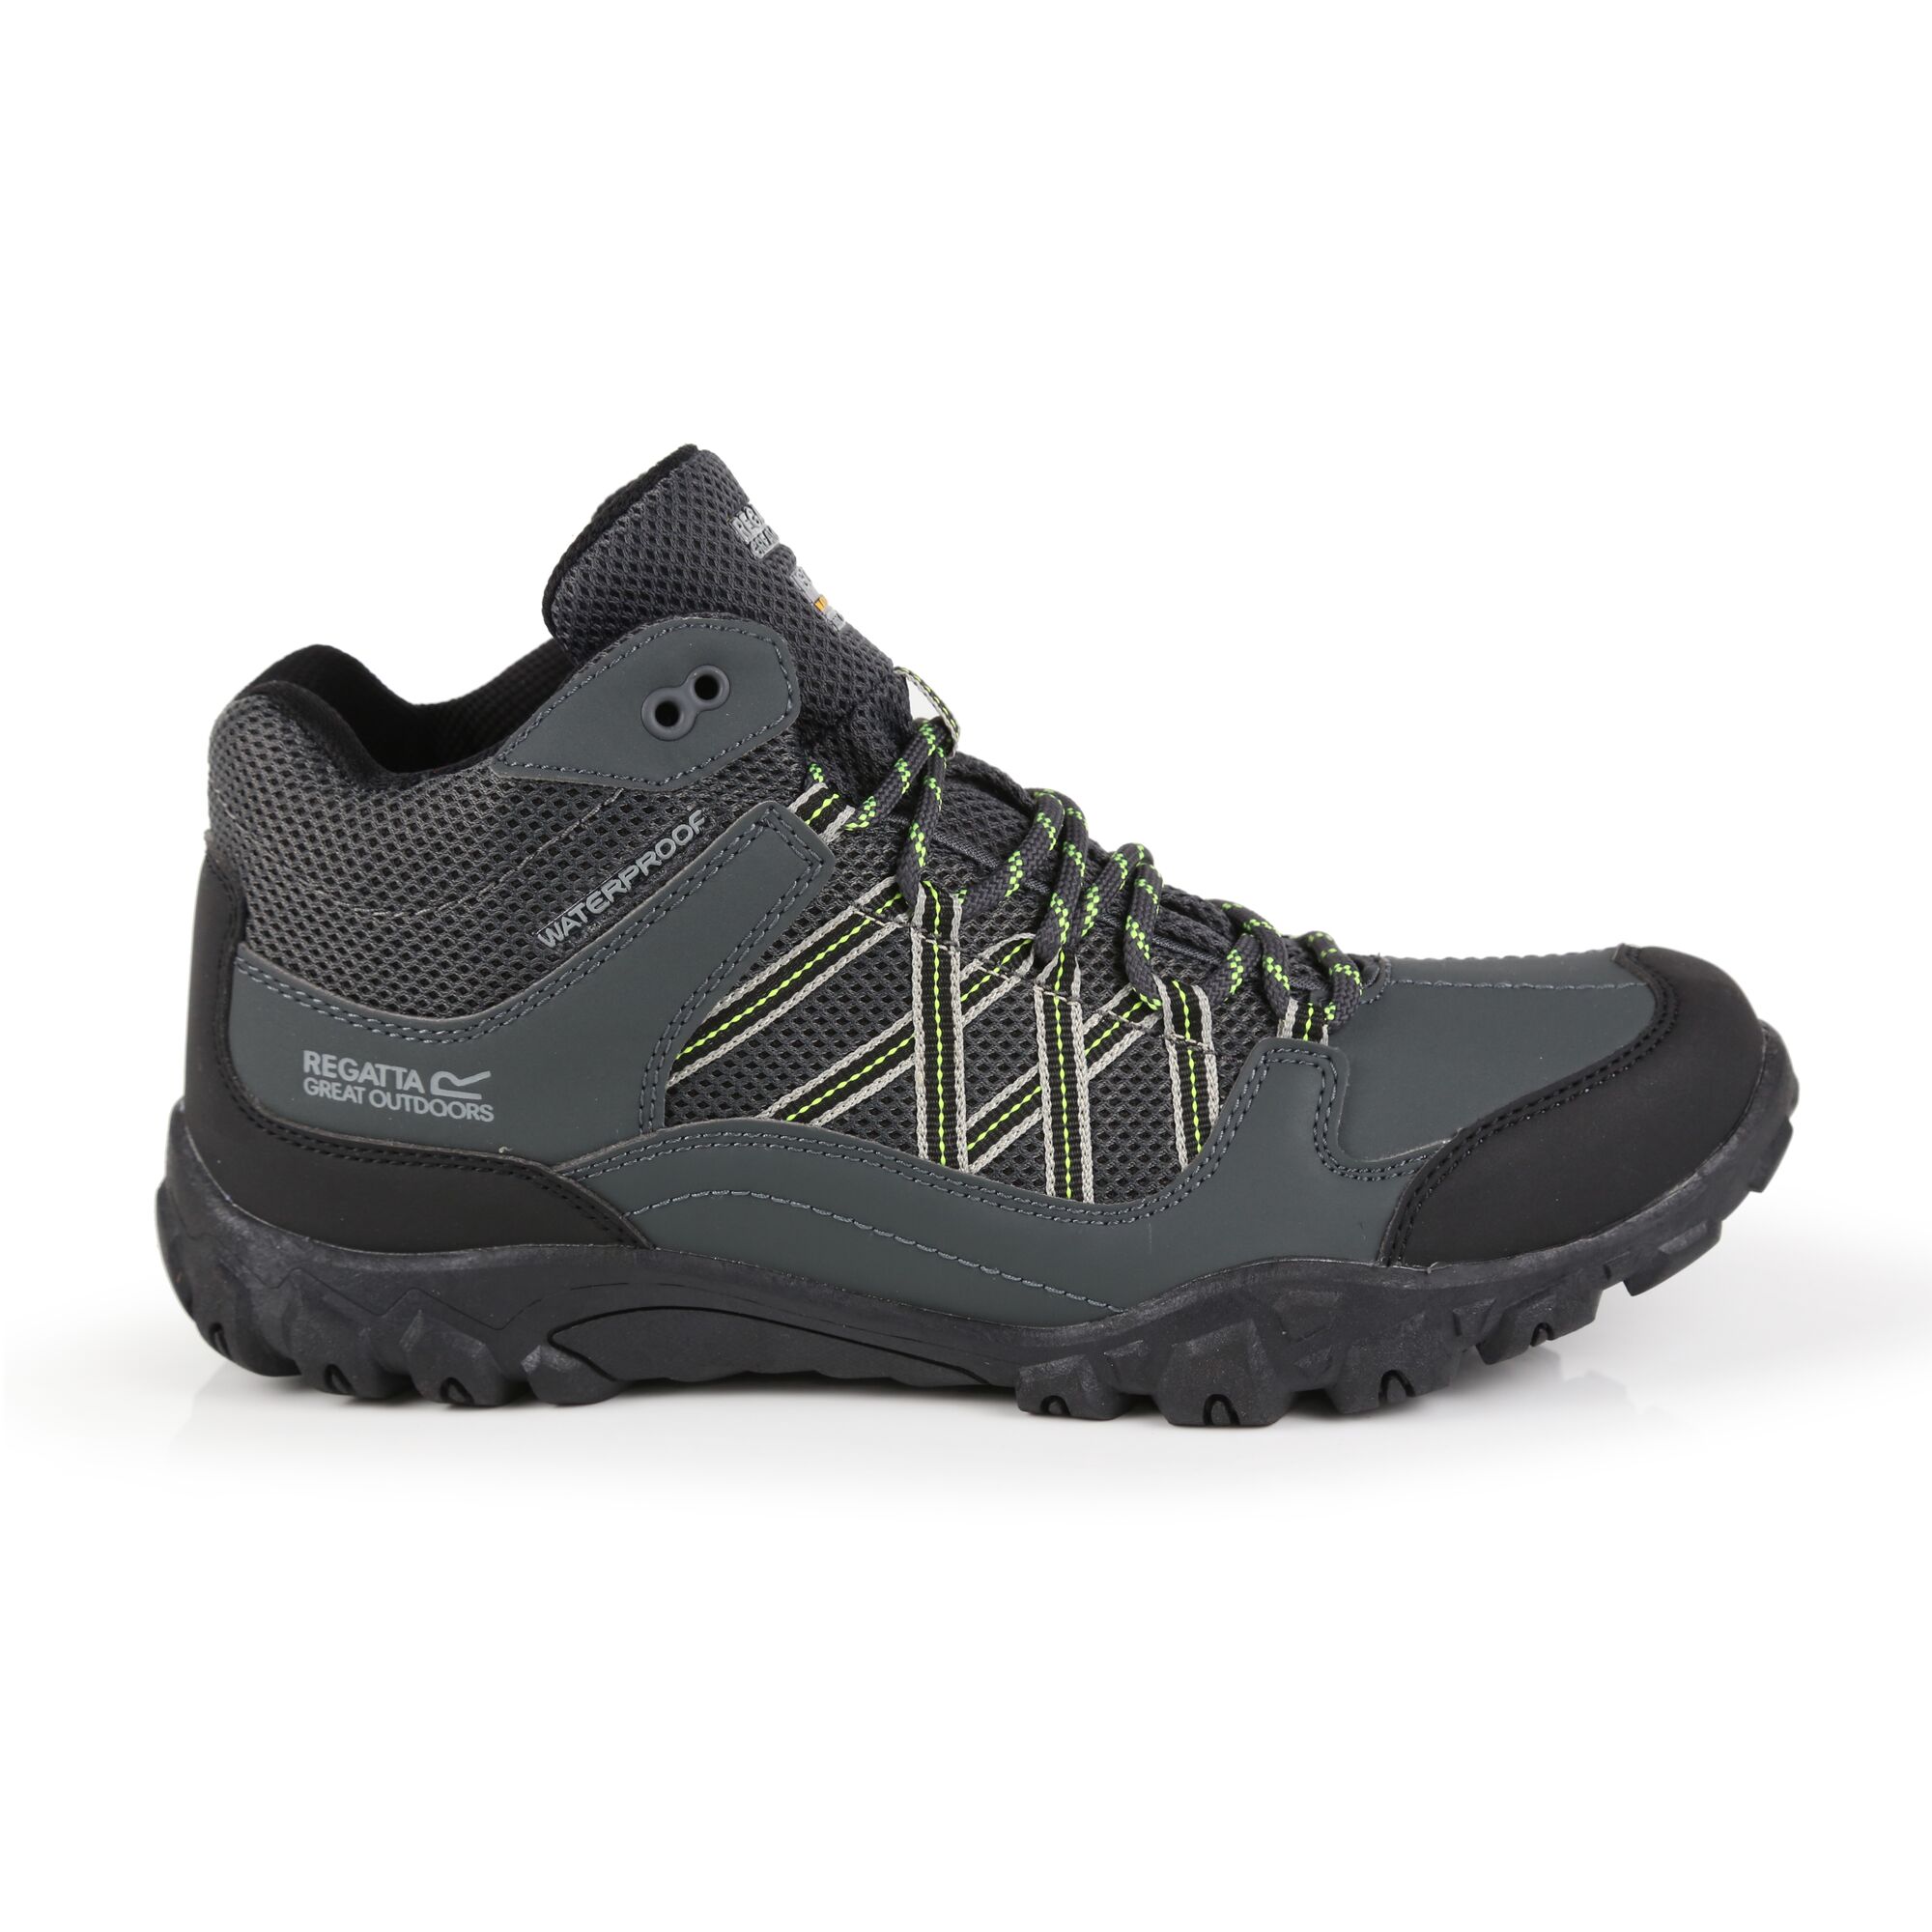 Zapatos De Senderismo Con Cordones Diseño Impermeable Regatta Edgepoint - gris-oscuro - 